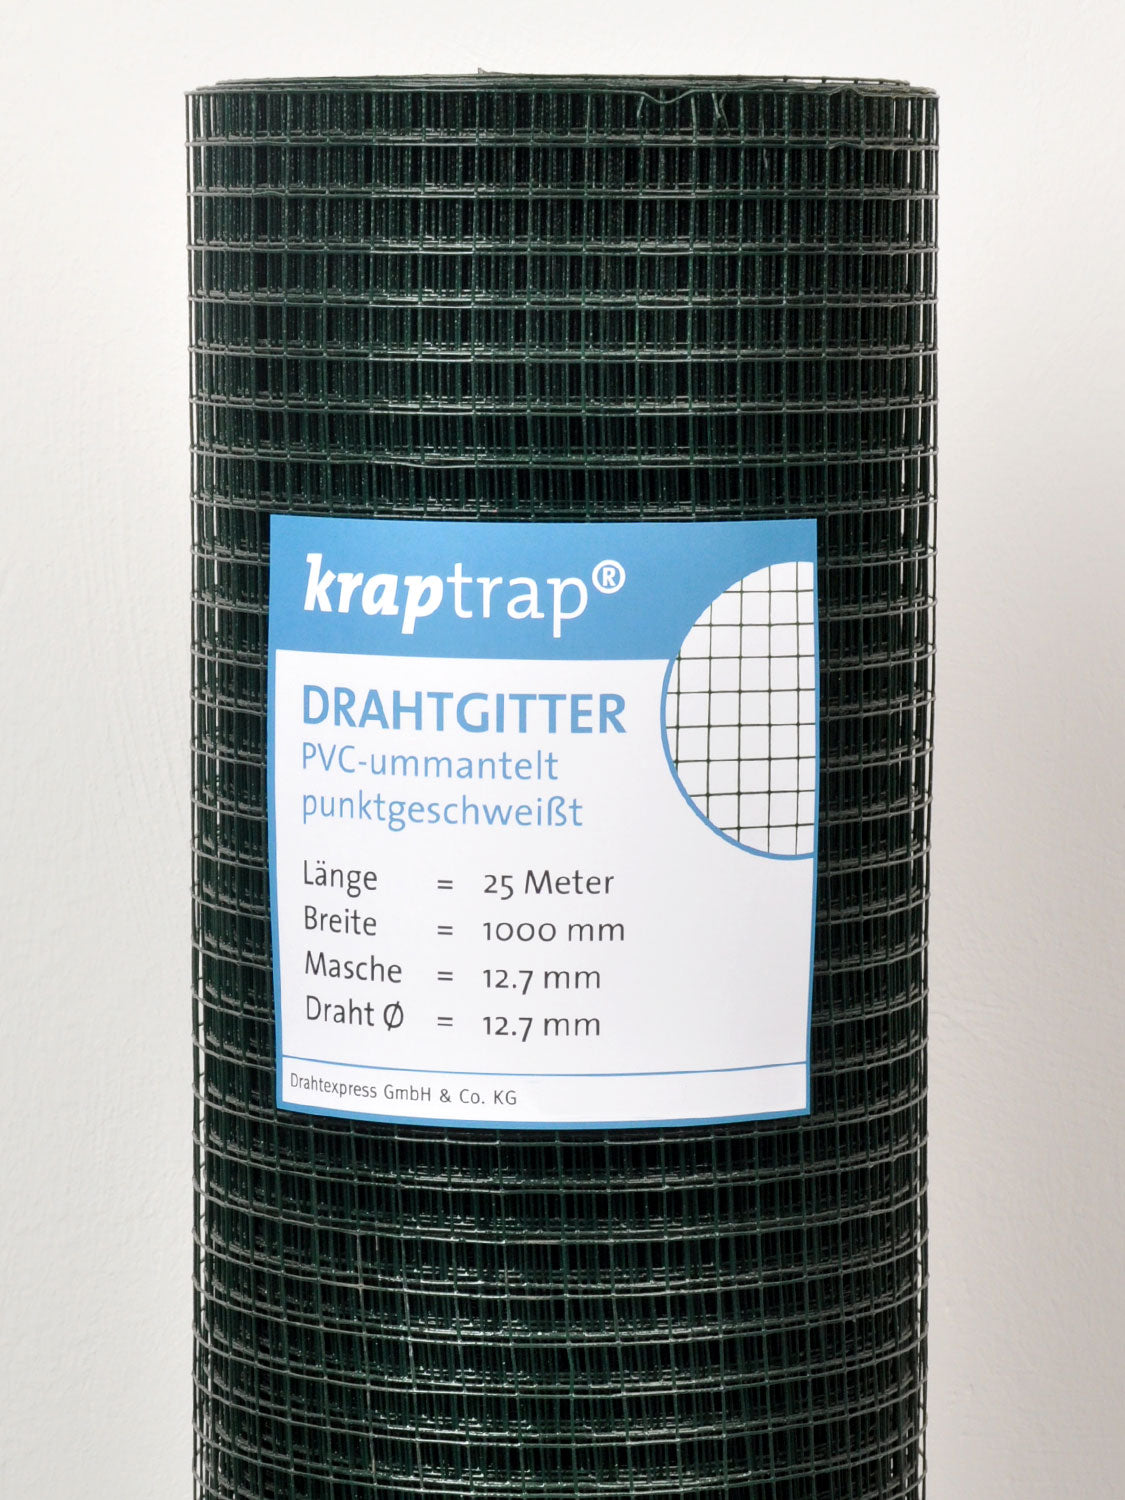 Kraptrap® Volierendraht Drahtgitter 12,7 mm Masche, grün ummantelt verzinkt